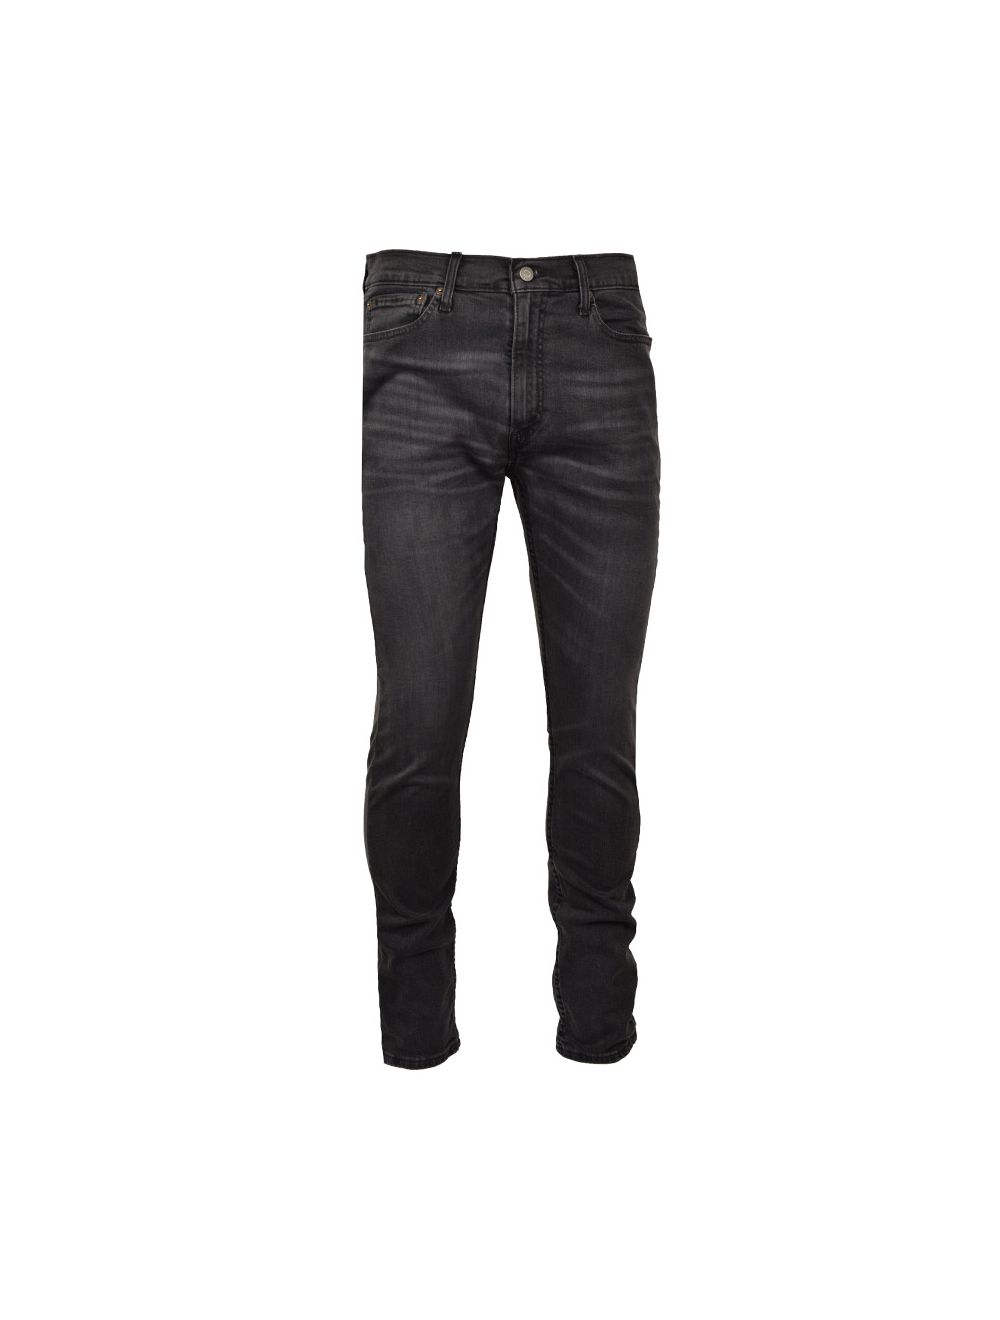 Buy Levi's 510 Skinny Fit Jeans Mens Black | Studio 88